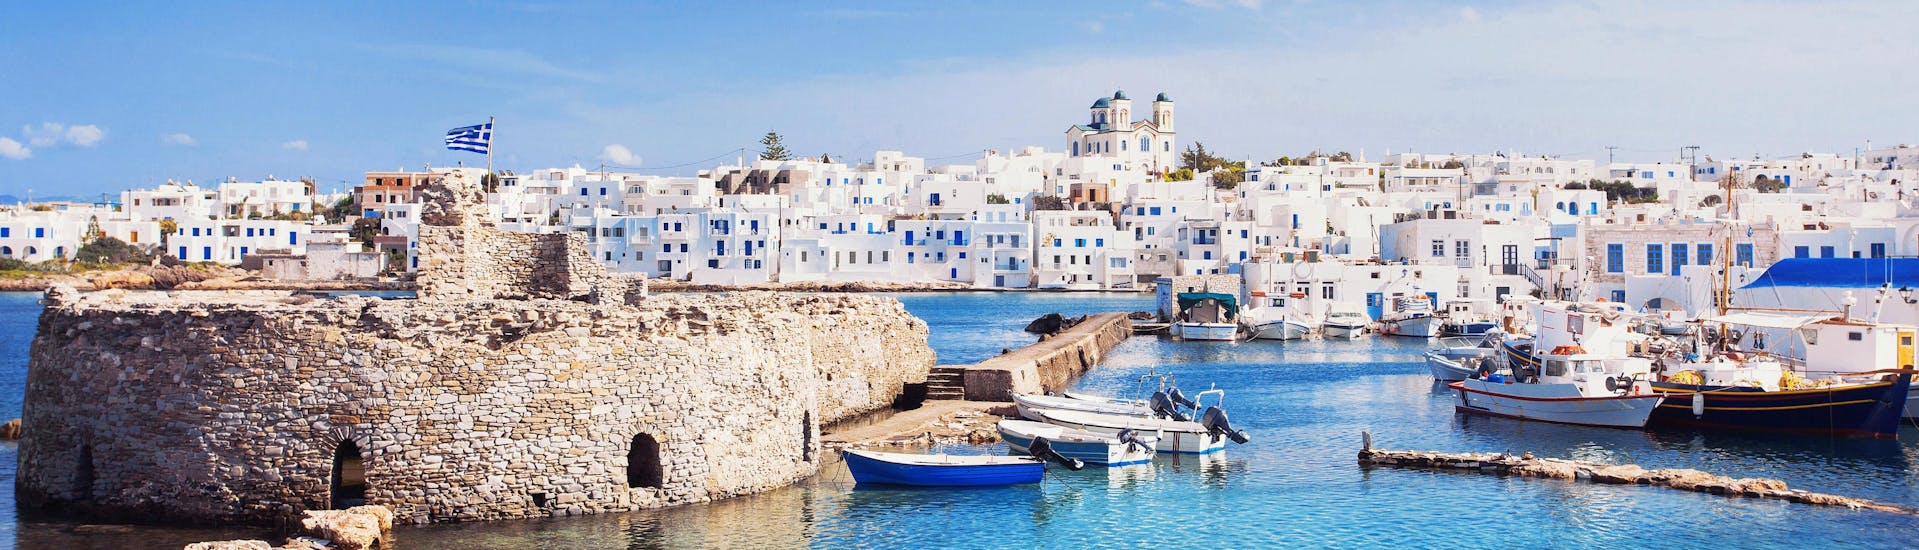 Belle vue des maisons blanches caractéristiques qui bordent les côtes des Cyclades, en Grèce, une destination populaire pour les excursions en bateau.